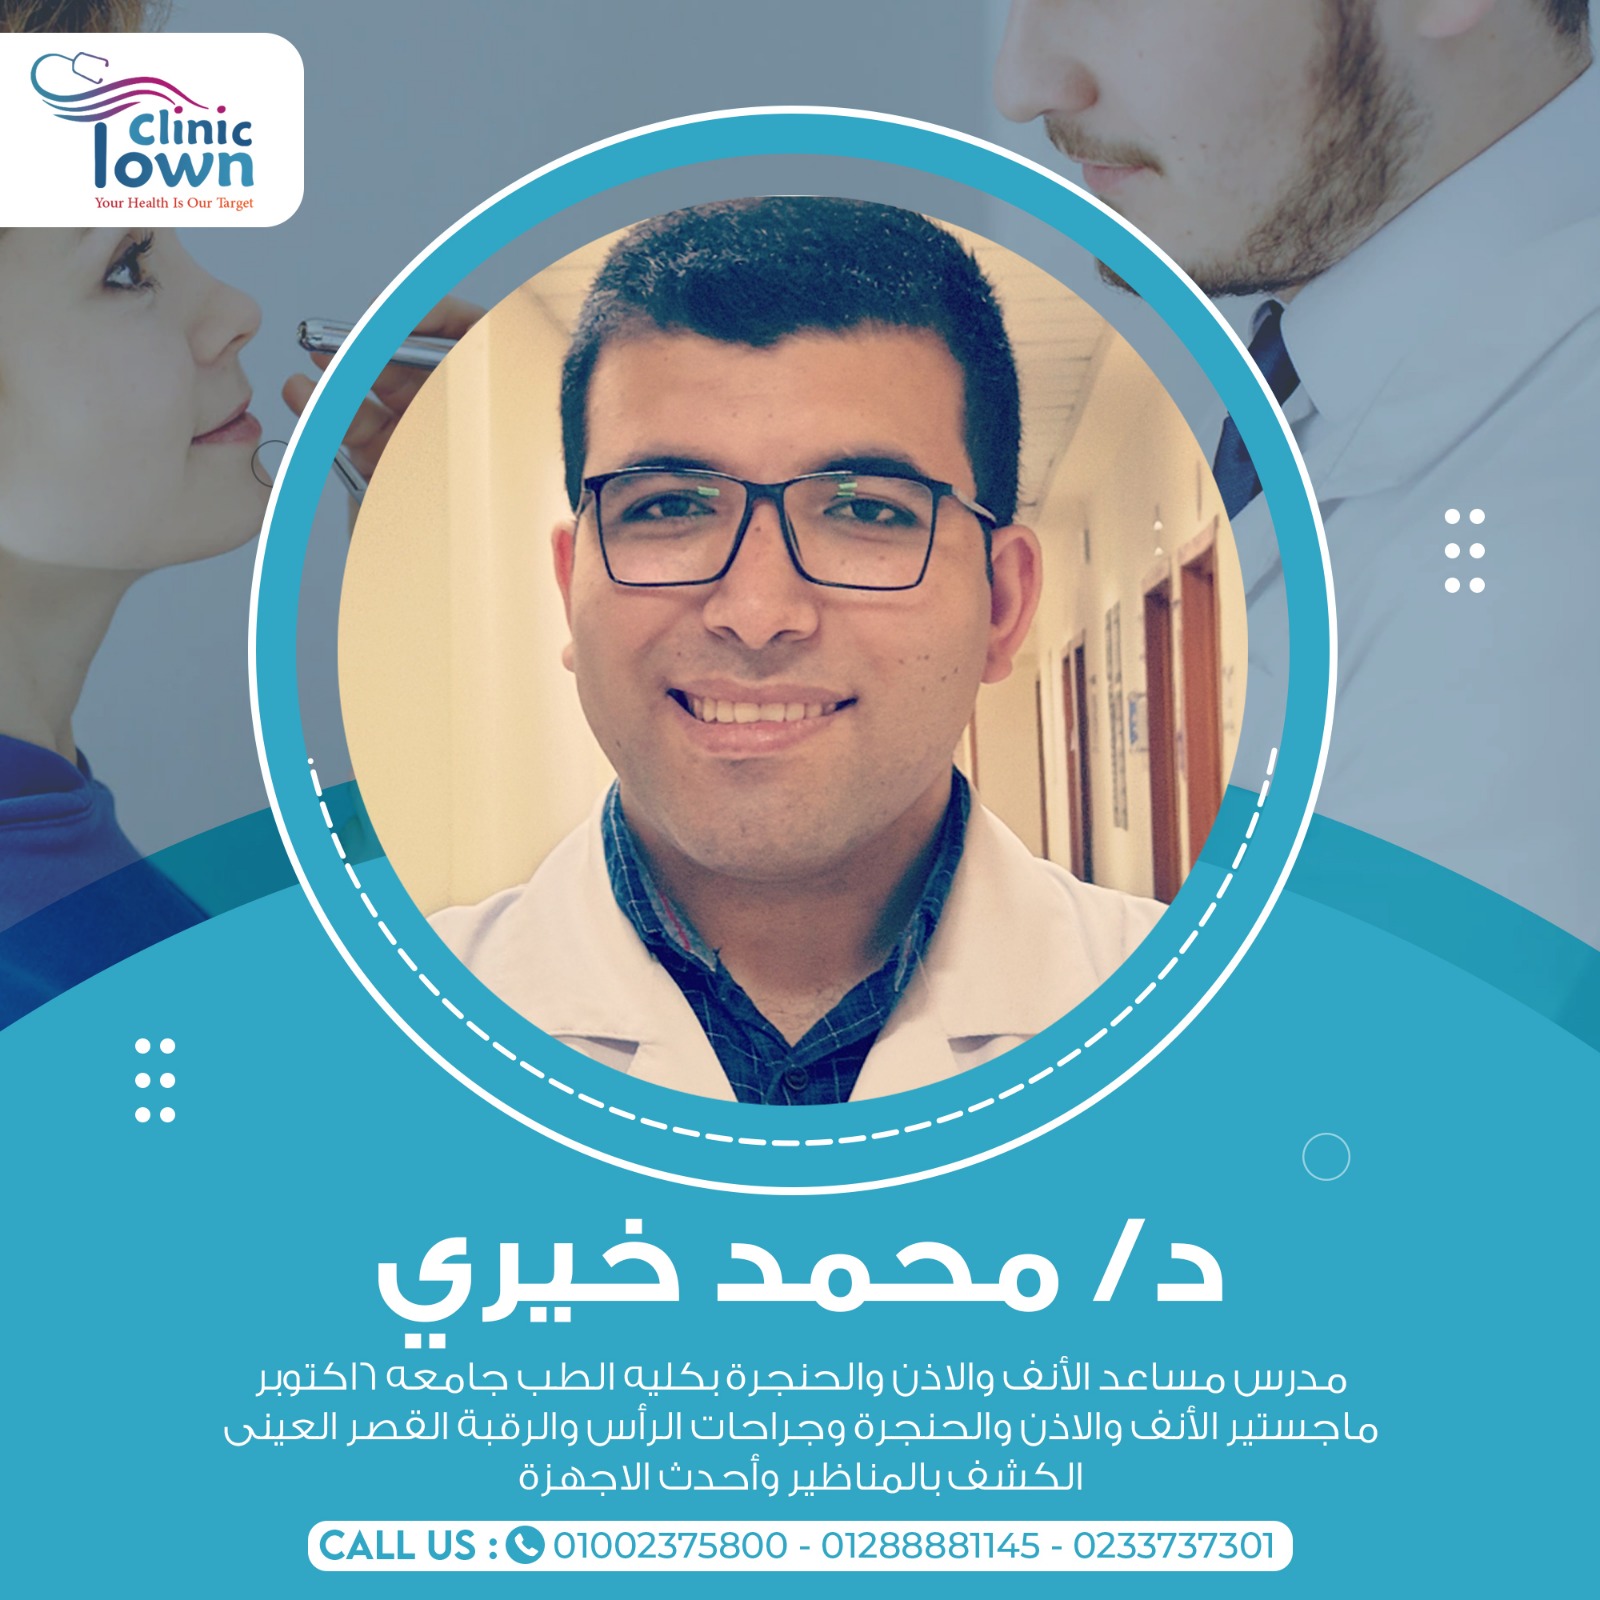 Dr. Mohamed El Sawy